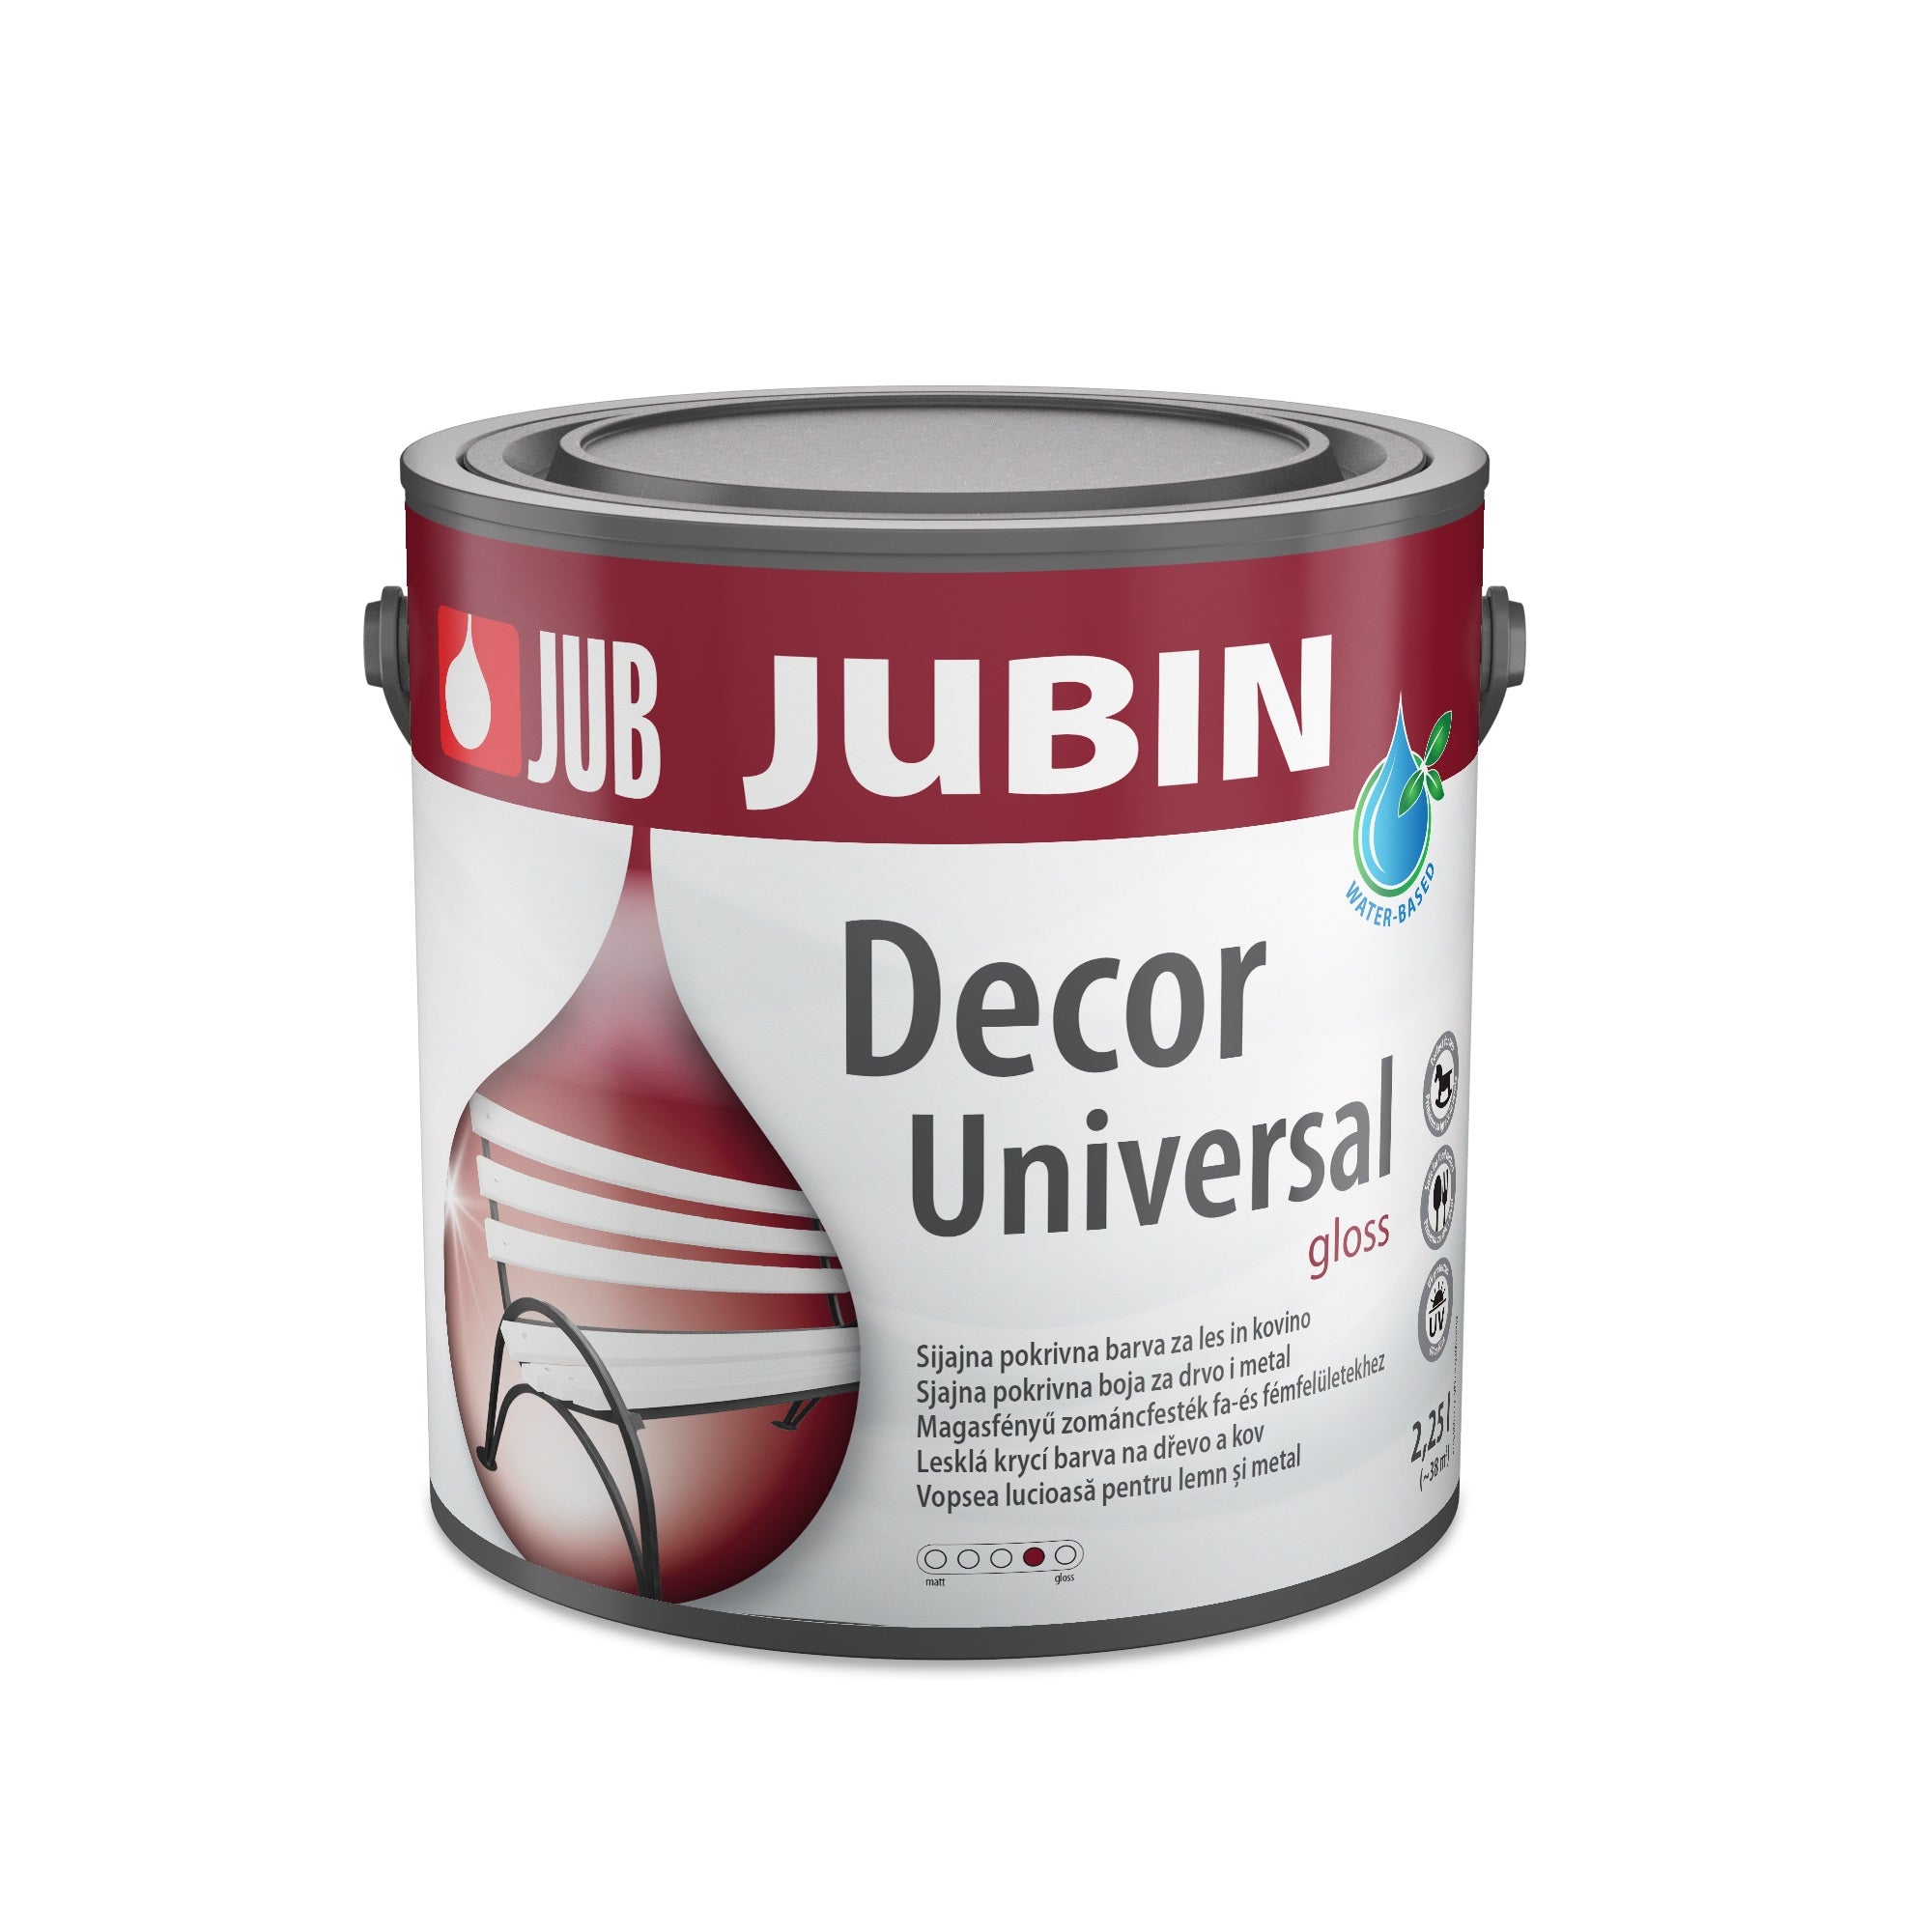 JUB JUBIN Decor Universal Univerzálna farba na drevo a kov matt 2,25 l